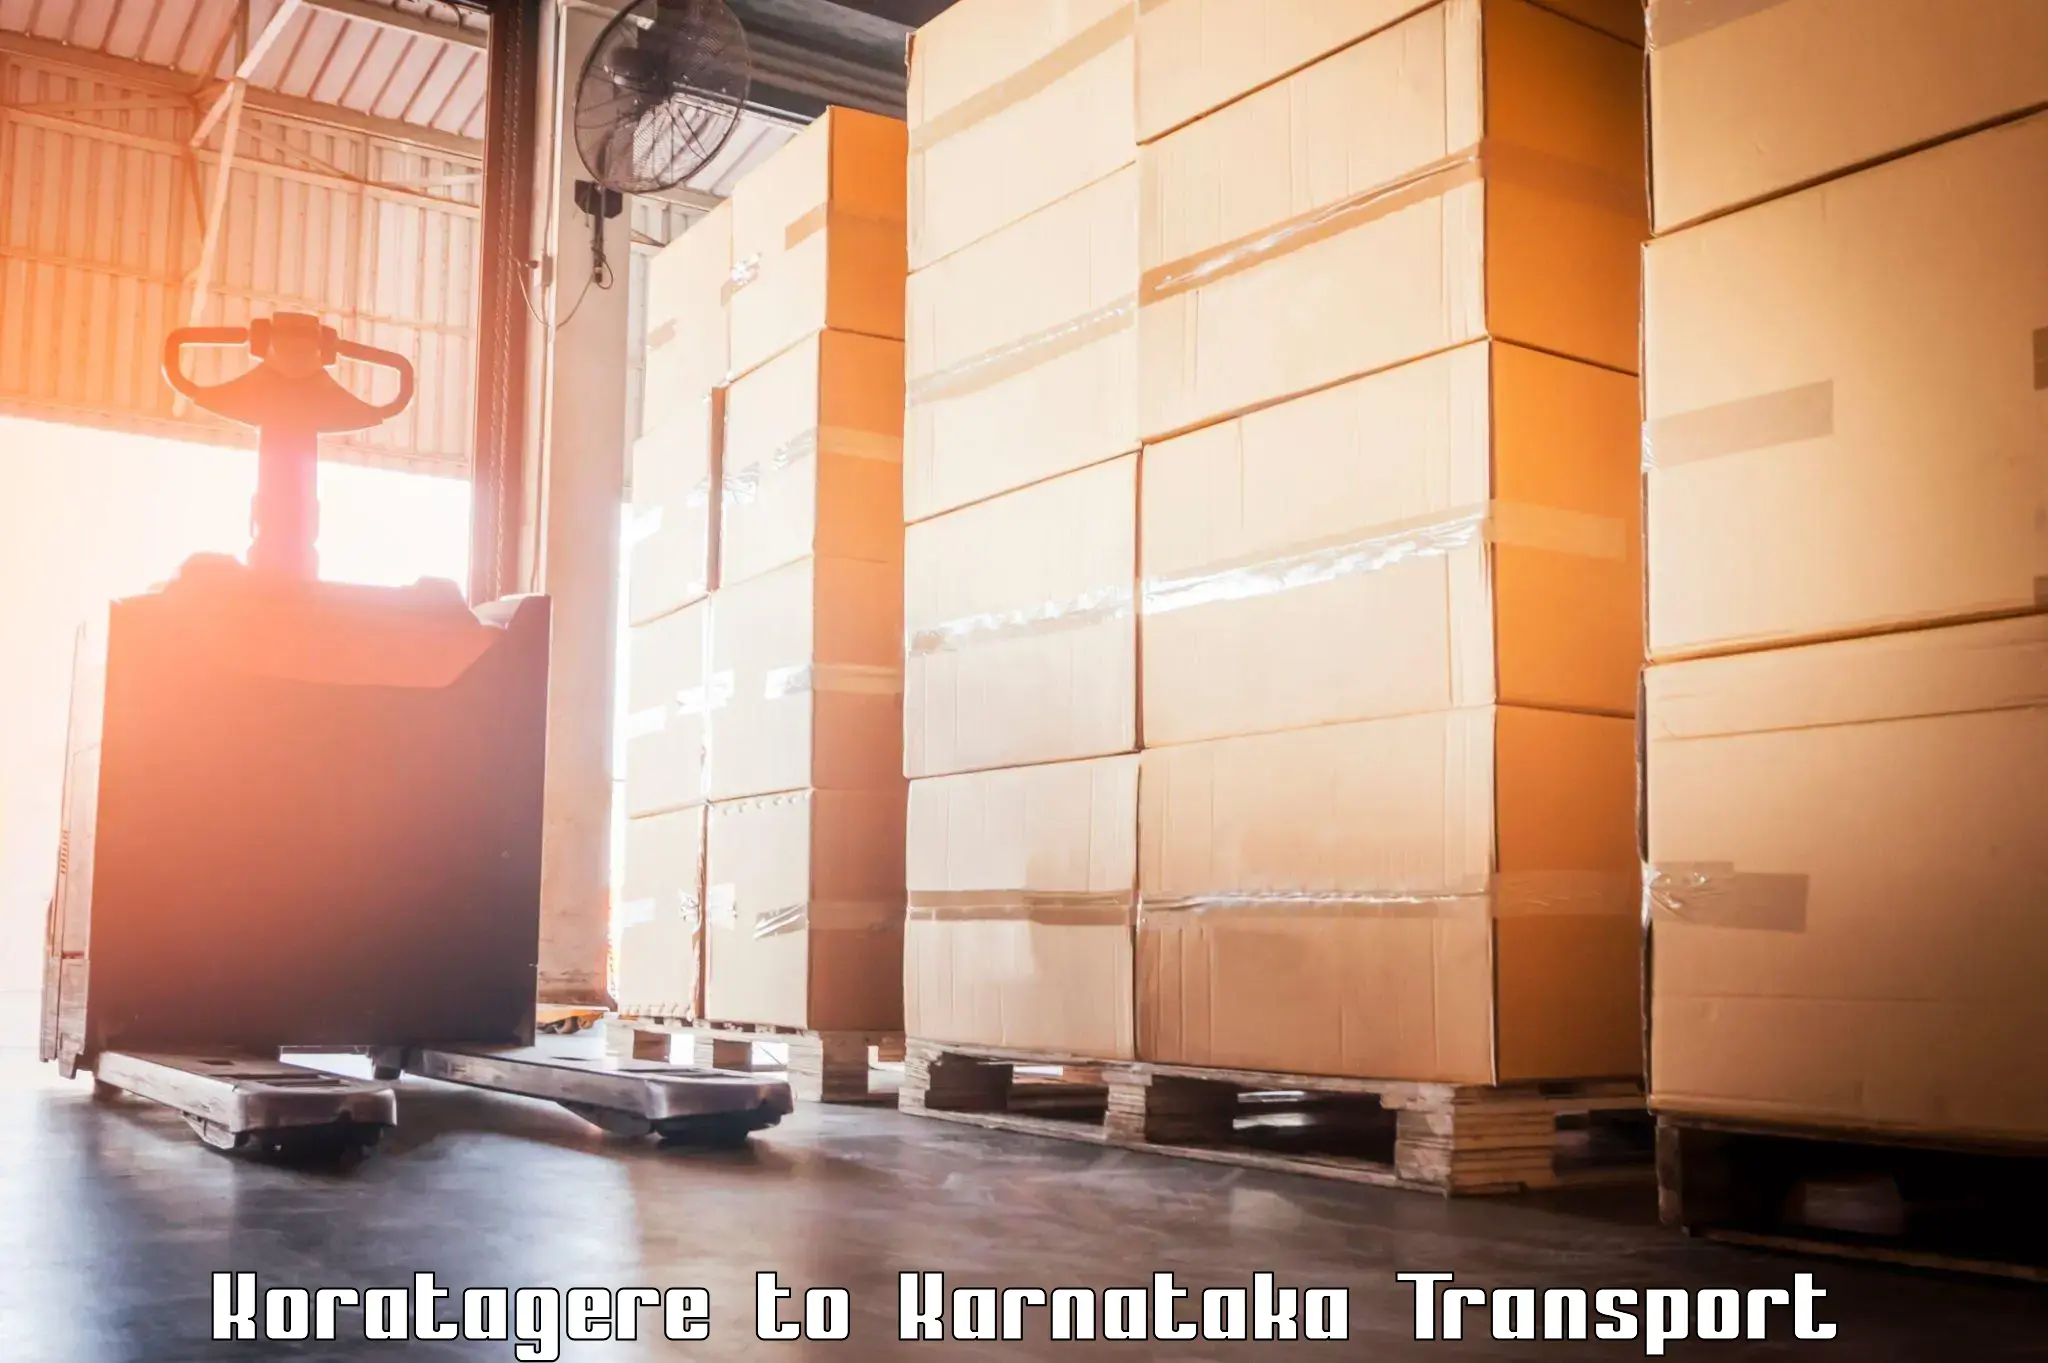 Shipping partner Koratagere to Hosadurga